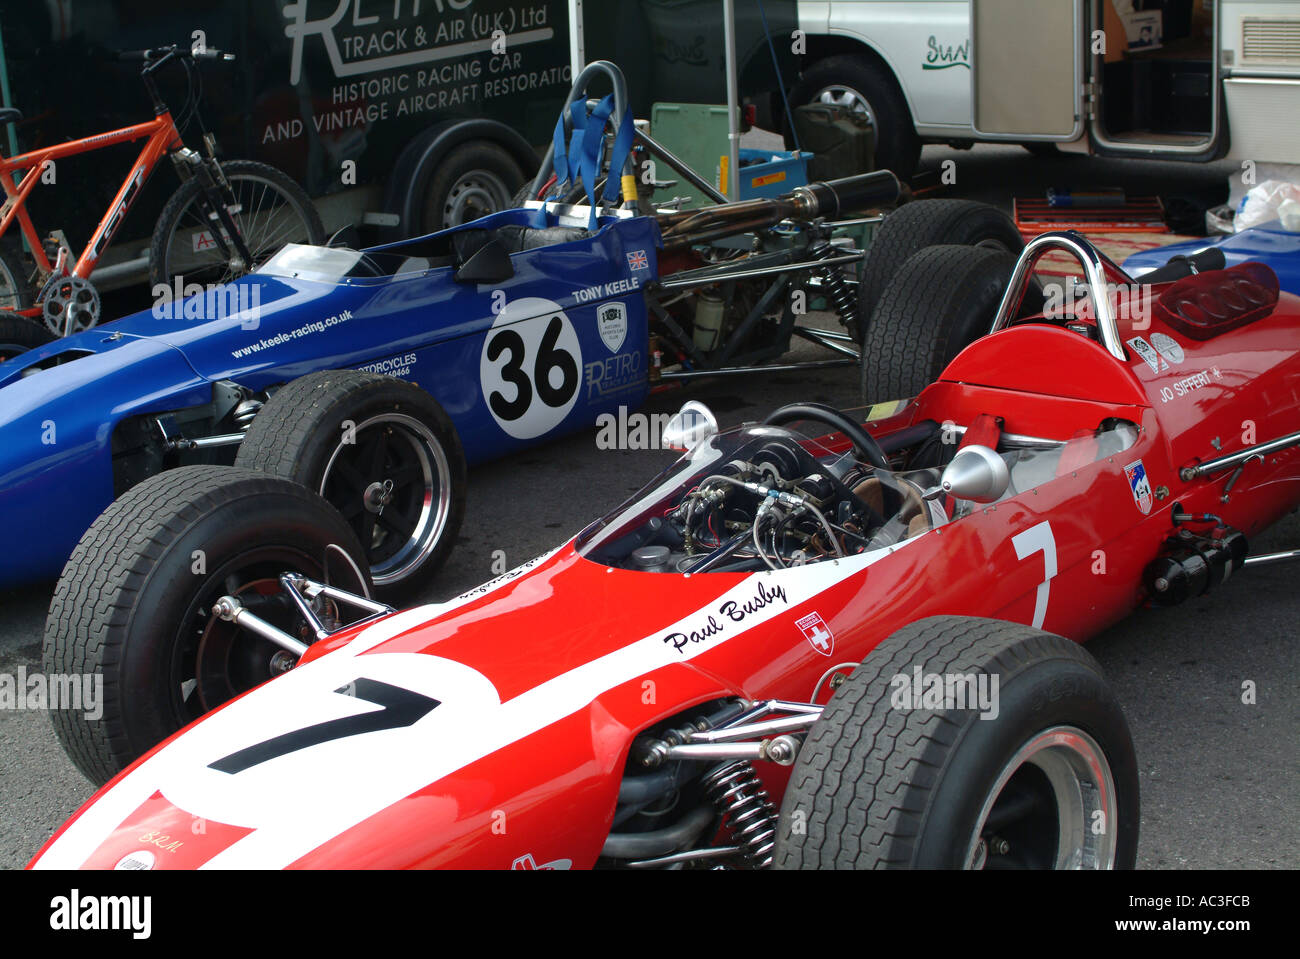 711 mars et Tecno T69 Grand Prix Racing Voitures à Oulton Park Motor Racing Circuit Cheshire England Royaume-Uni UK Banque D'Images